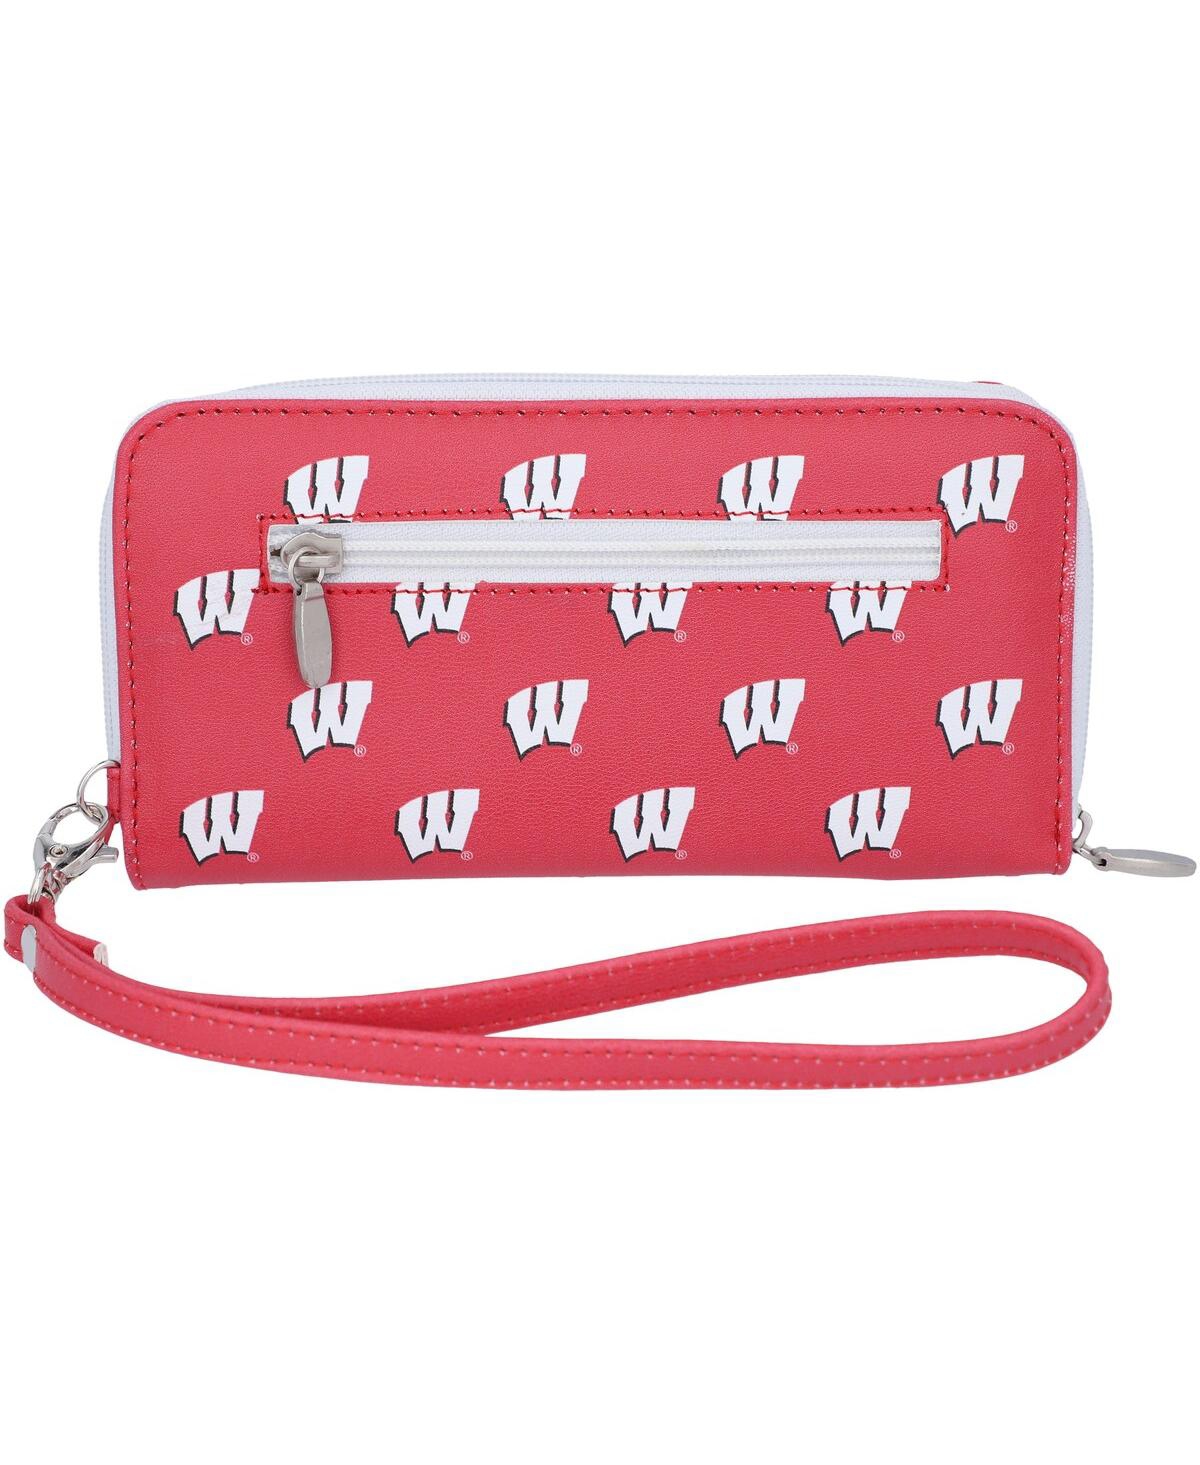 Women's Wisconsin Badgers Zip-Around Wristlet Wallet - Red